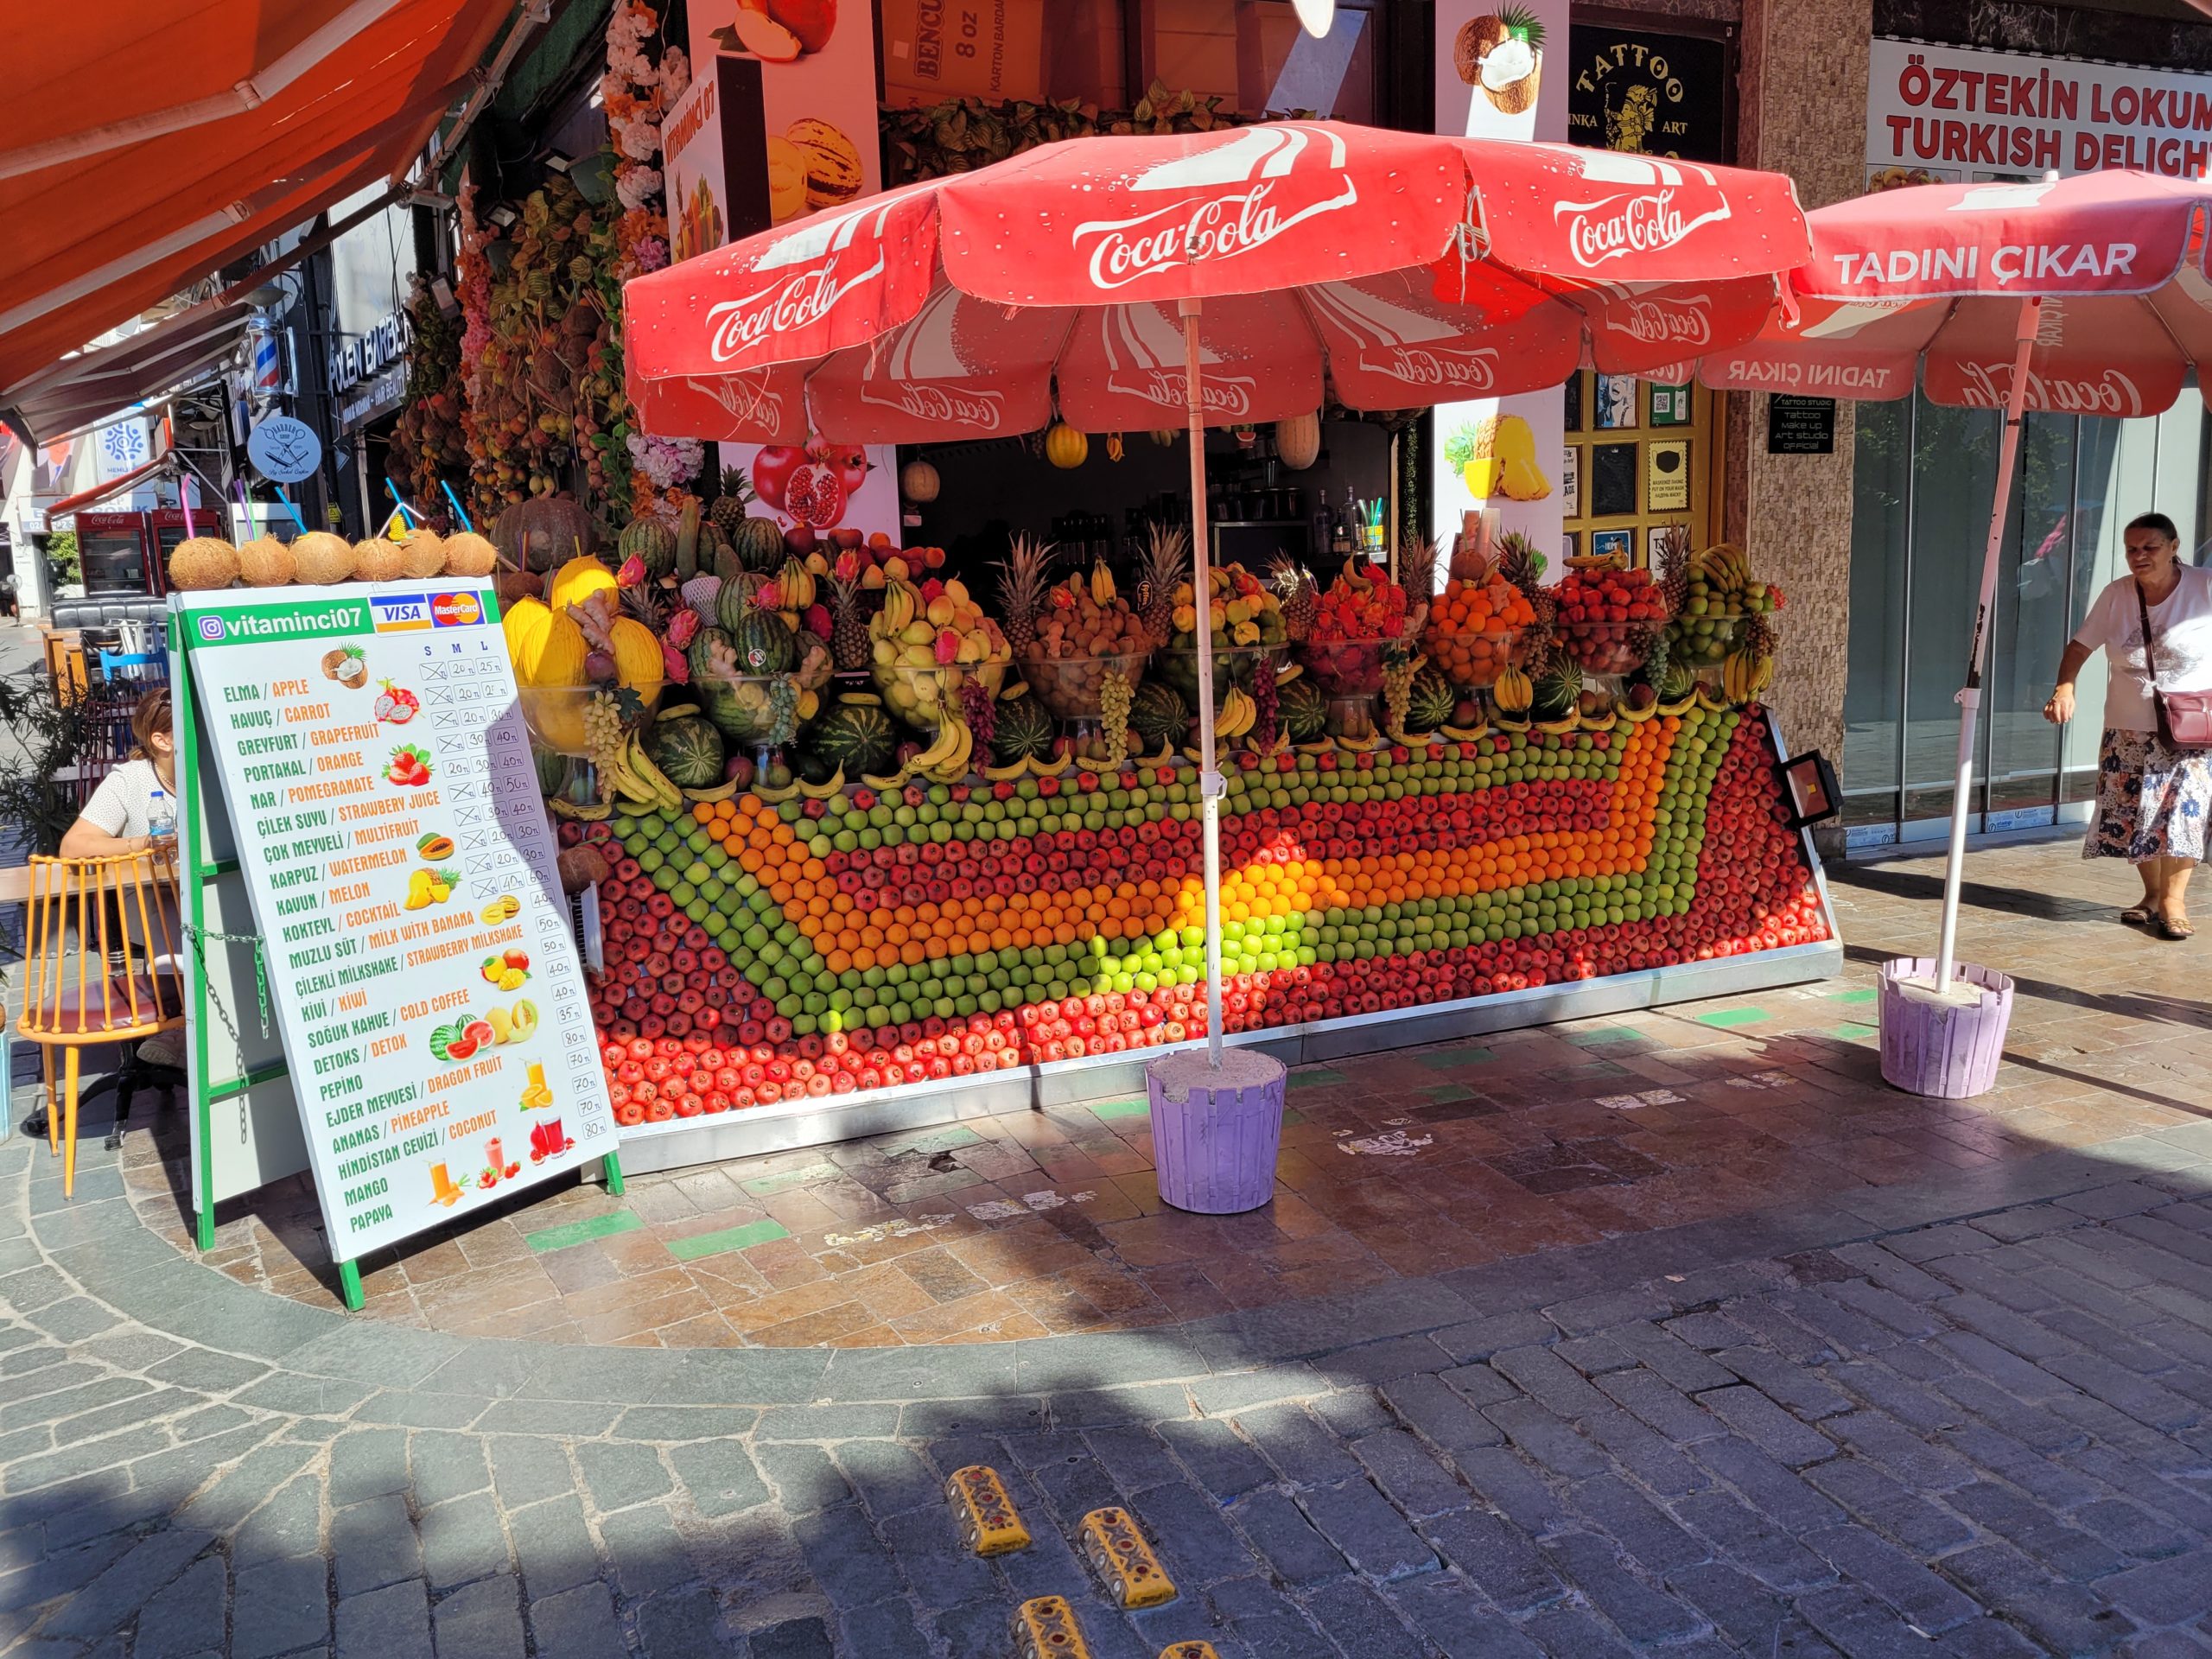 Antalya Street of umbrellas